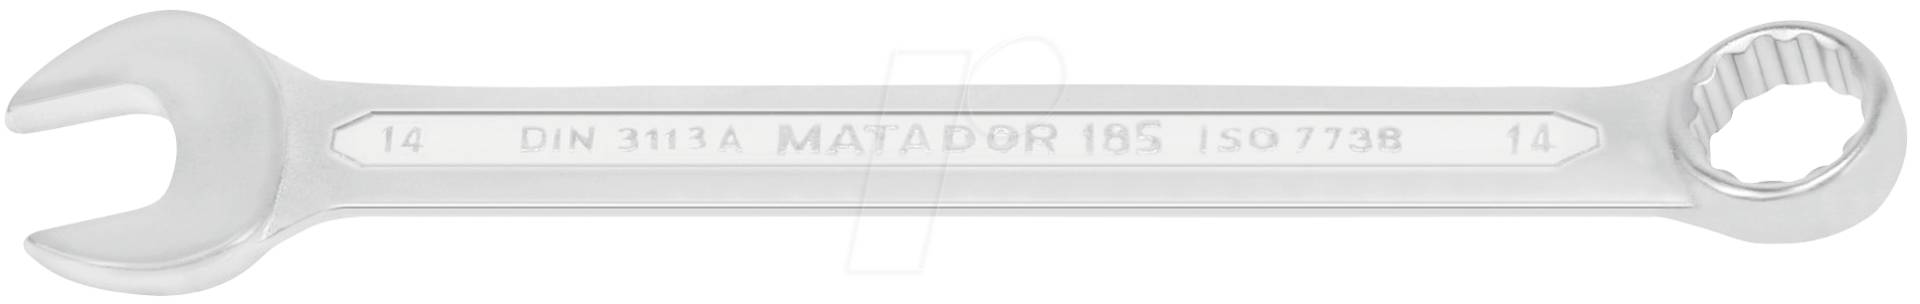 MAT 0185 0140 - Ringmaulschlüssel, SW 14, DIN 3113 A von Matador